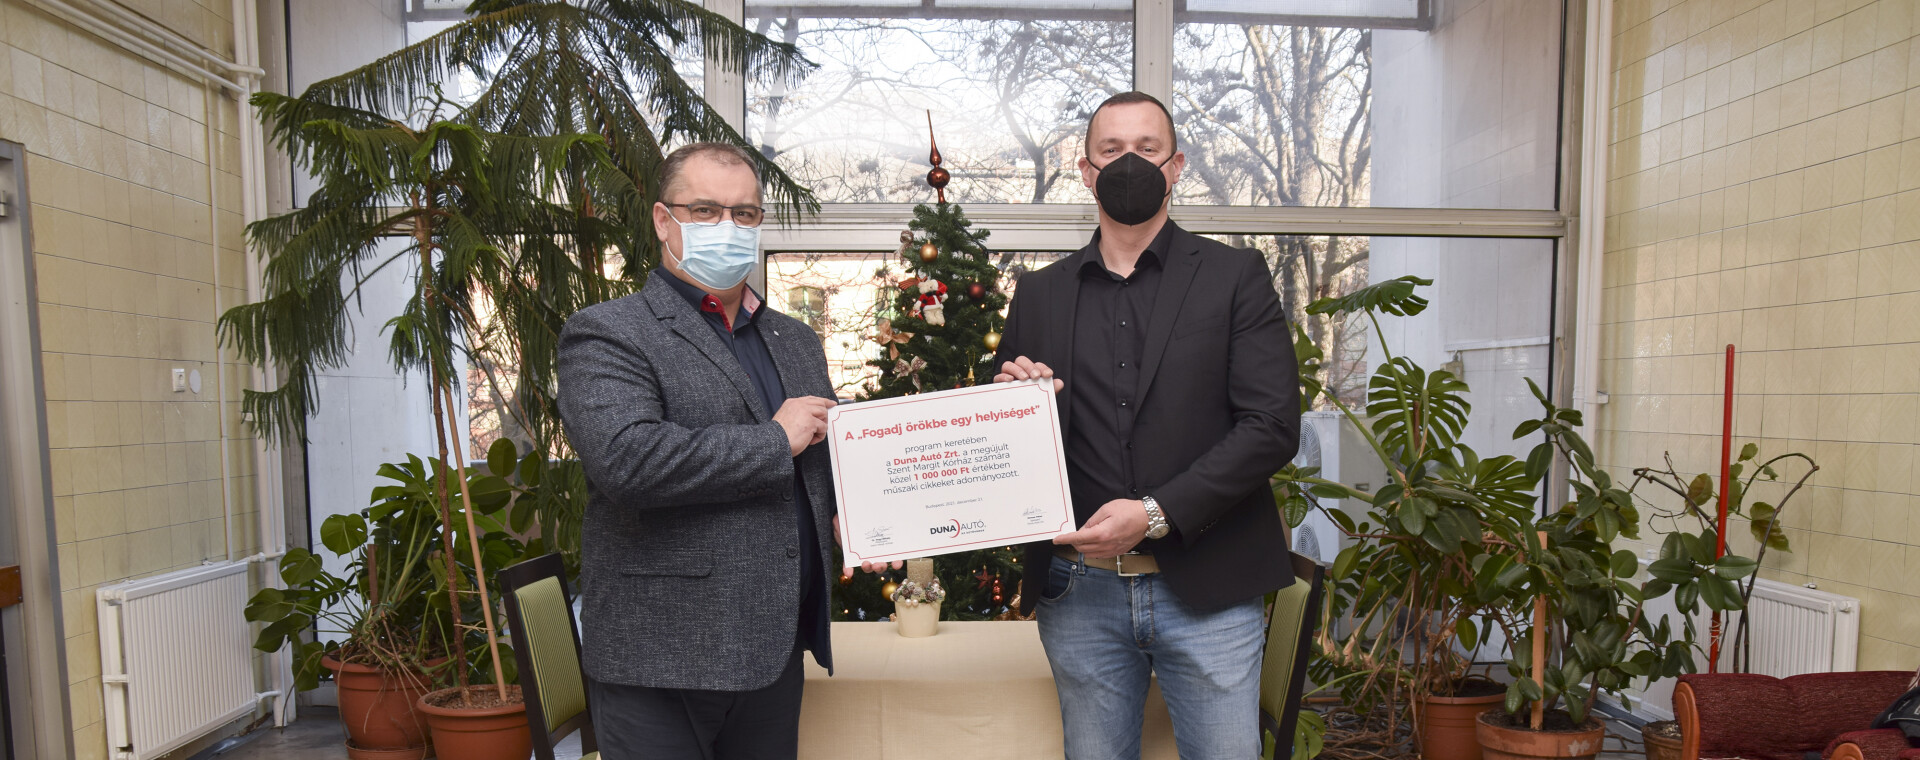 A Duna Autó ismét adományokkal támogatja a Szent Margit Kórházat